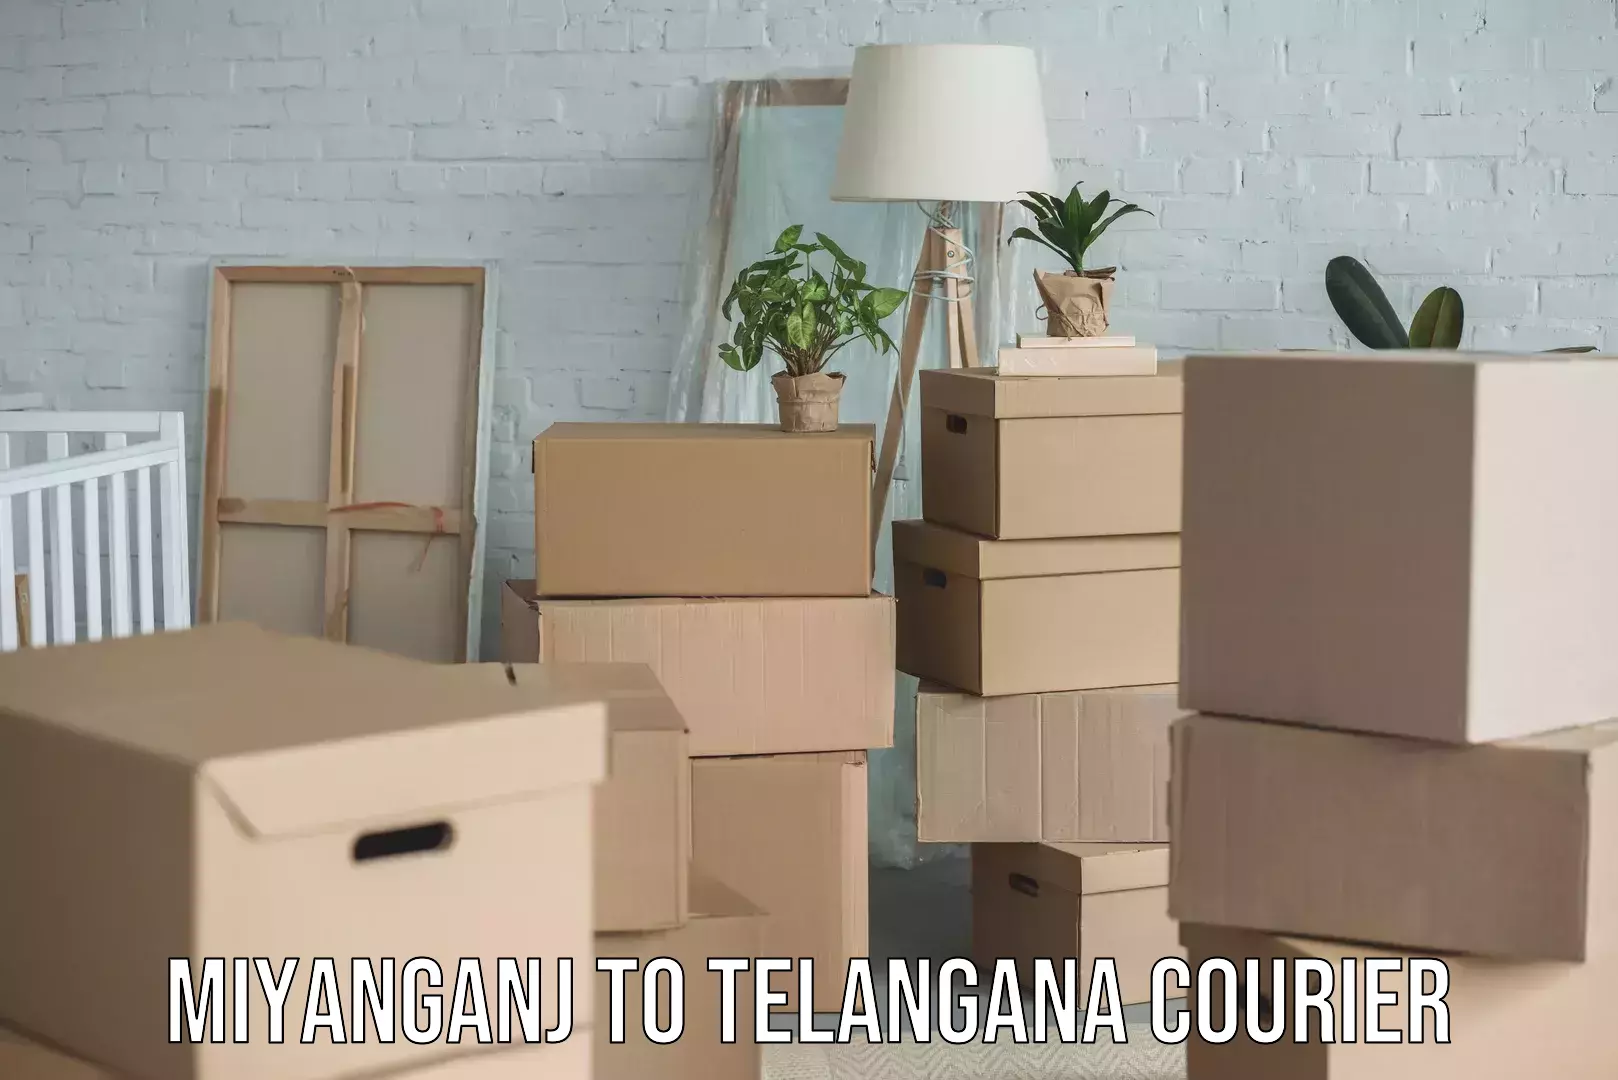 Furniture moving and handling Miyanganj to Telangana